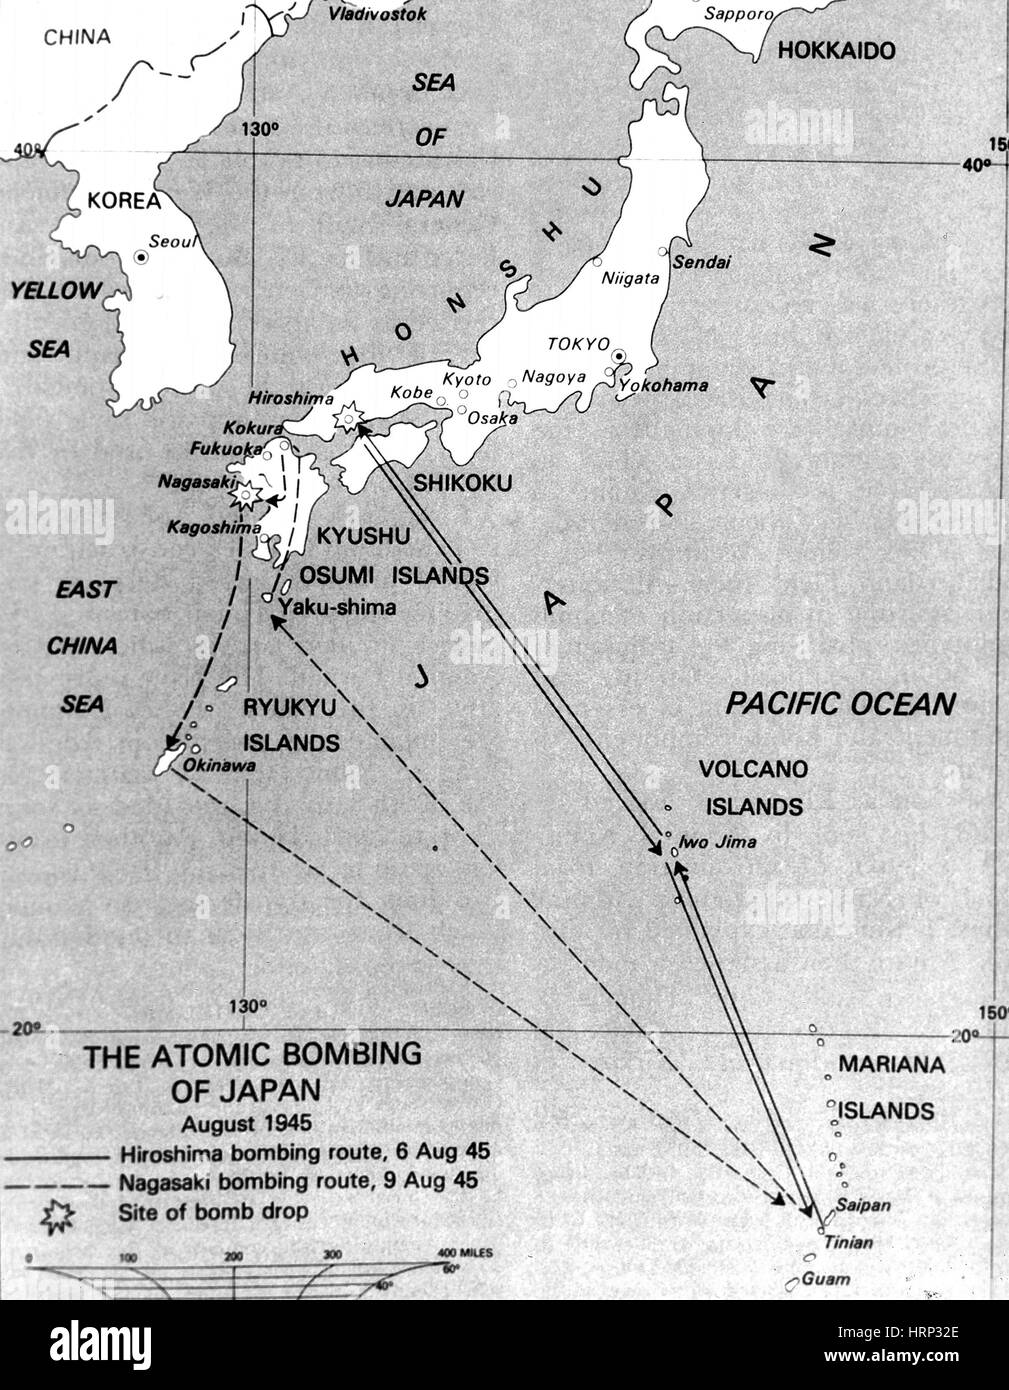 Atomic Bombing of Japan, 1945 Stock Photo